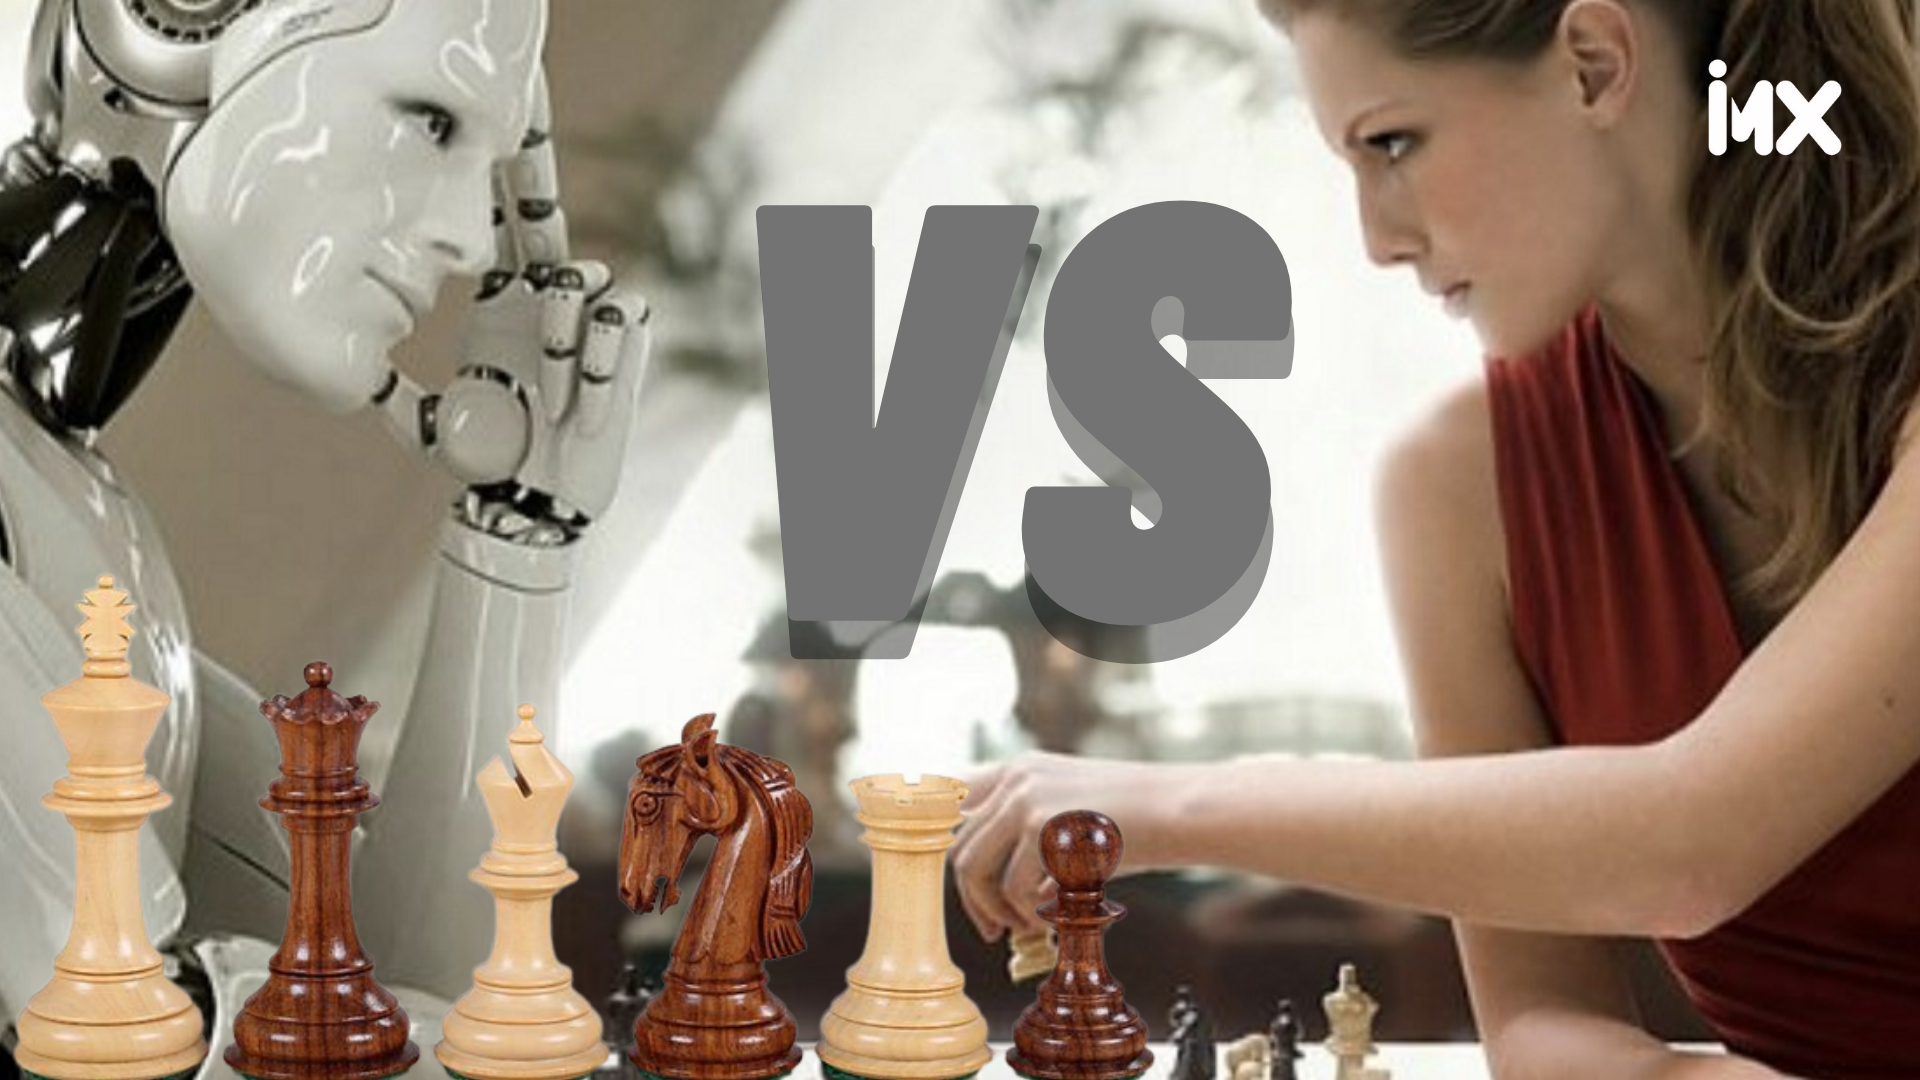 Humanos vs máquinas: ¿puede la inteligencia artificial reemplazar la mente humana?